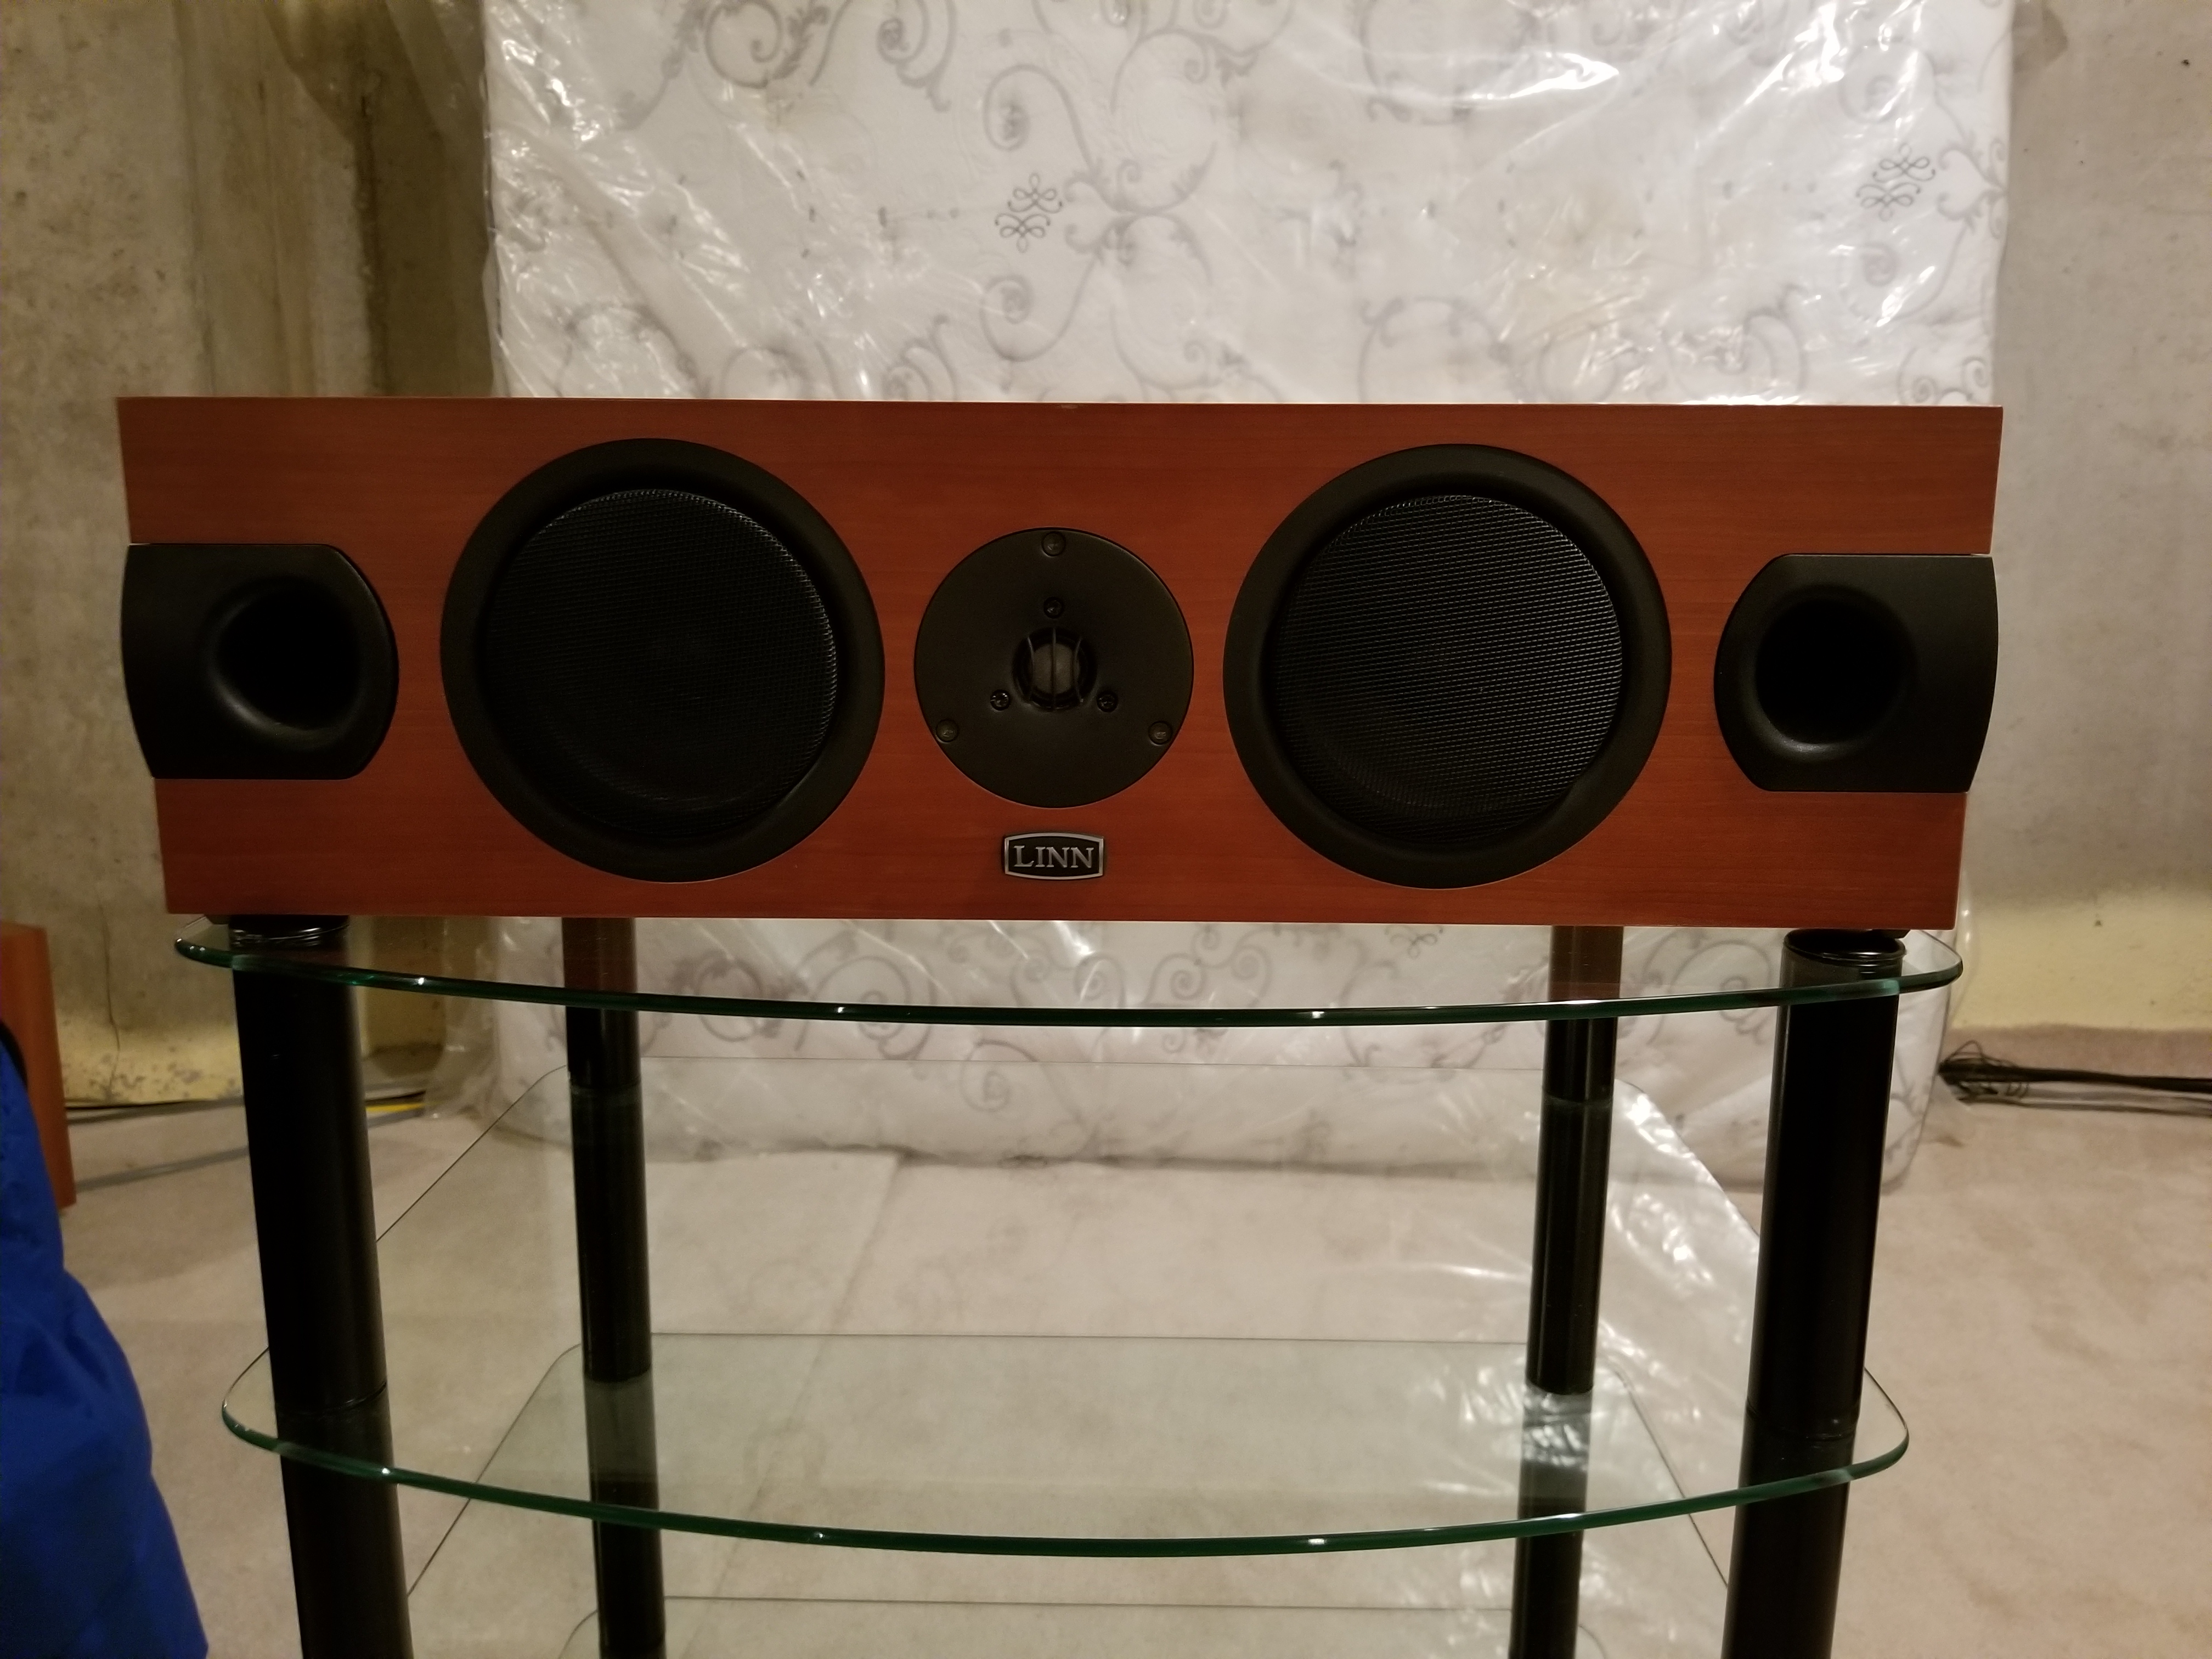 Used Linn AV5120 Center speakers for Sale | HifiShark.com